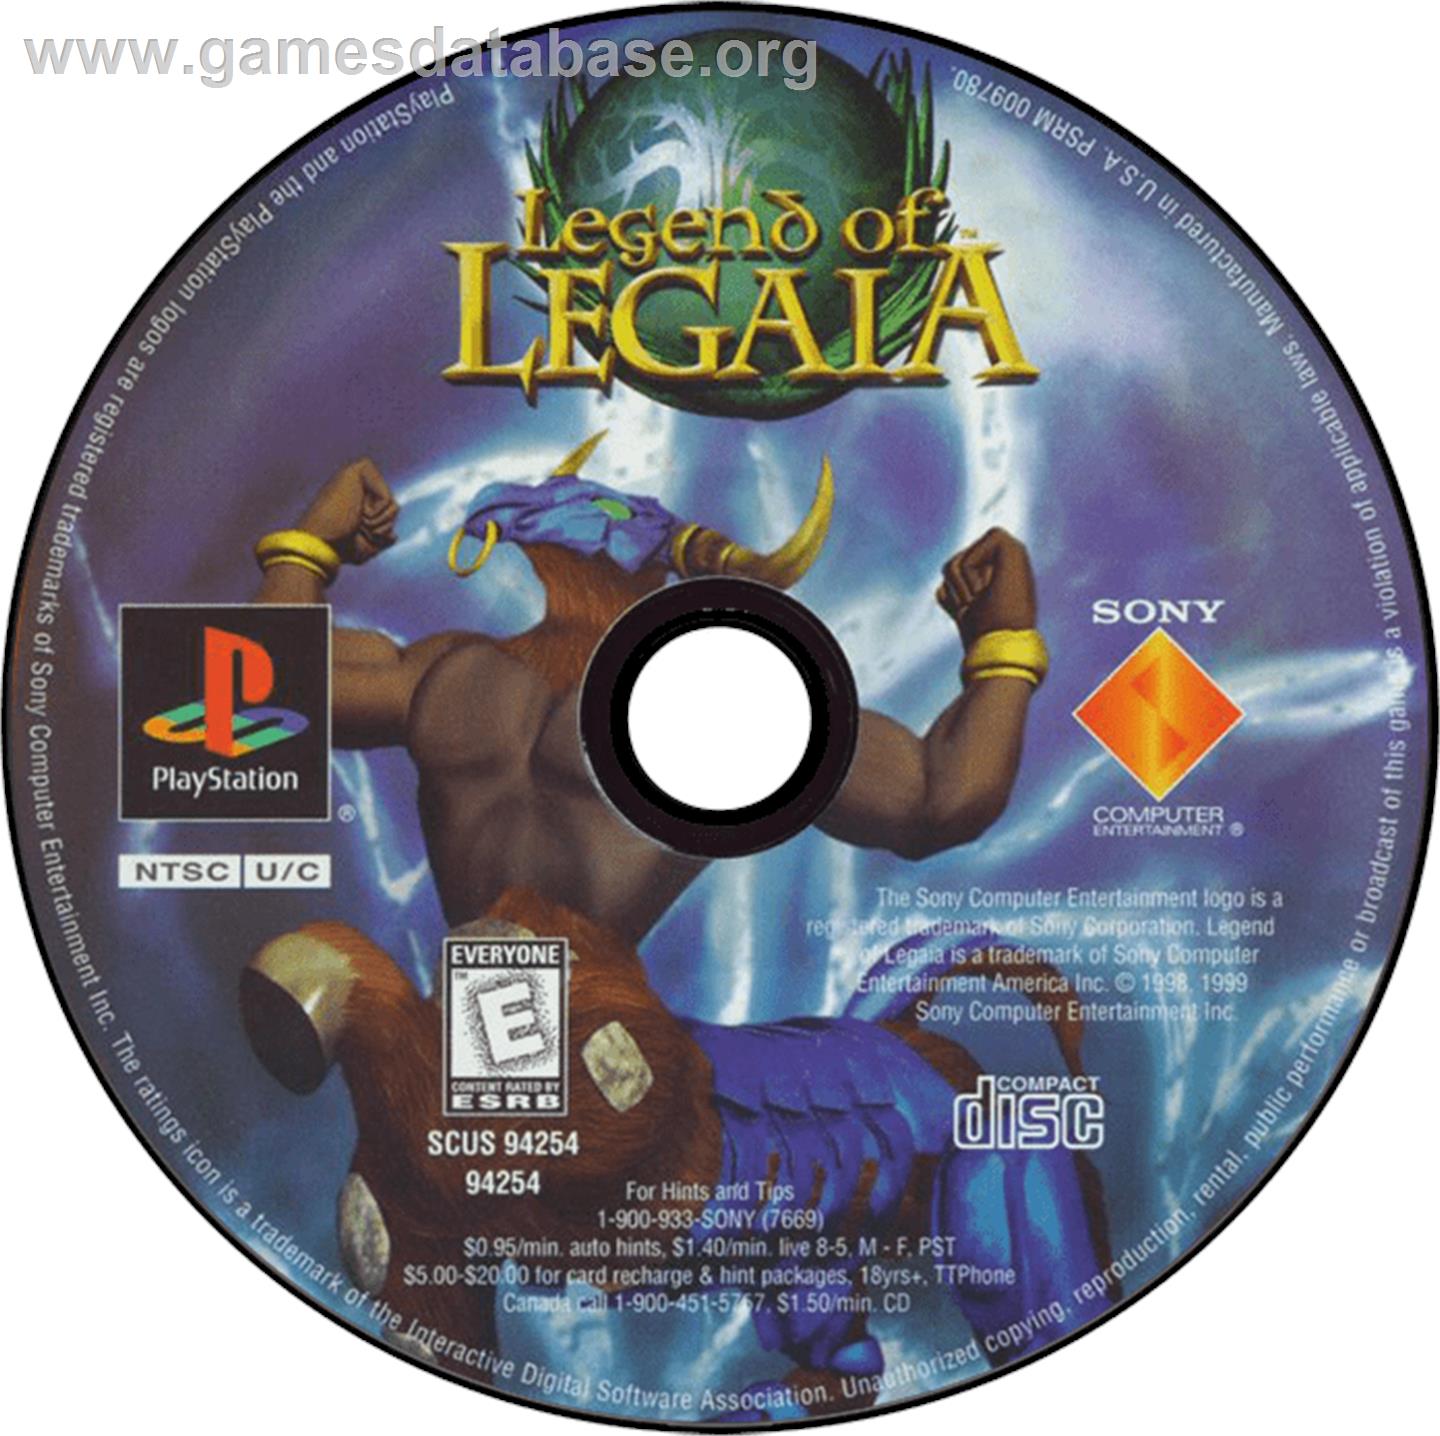 Legend of Legaia - Sony Playstation - Artwork - Disc